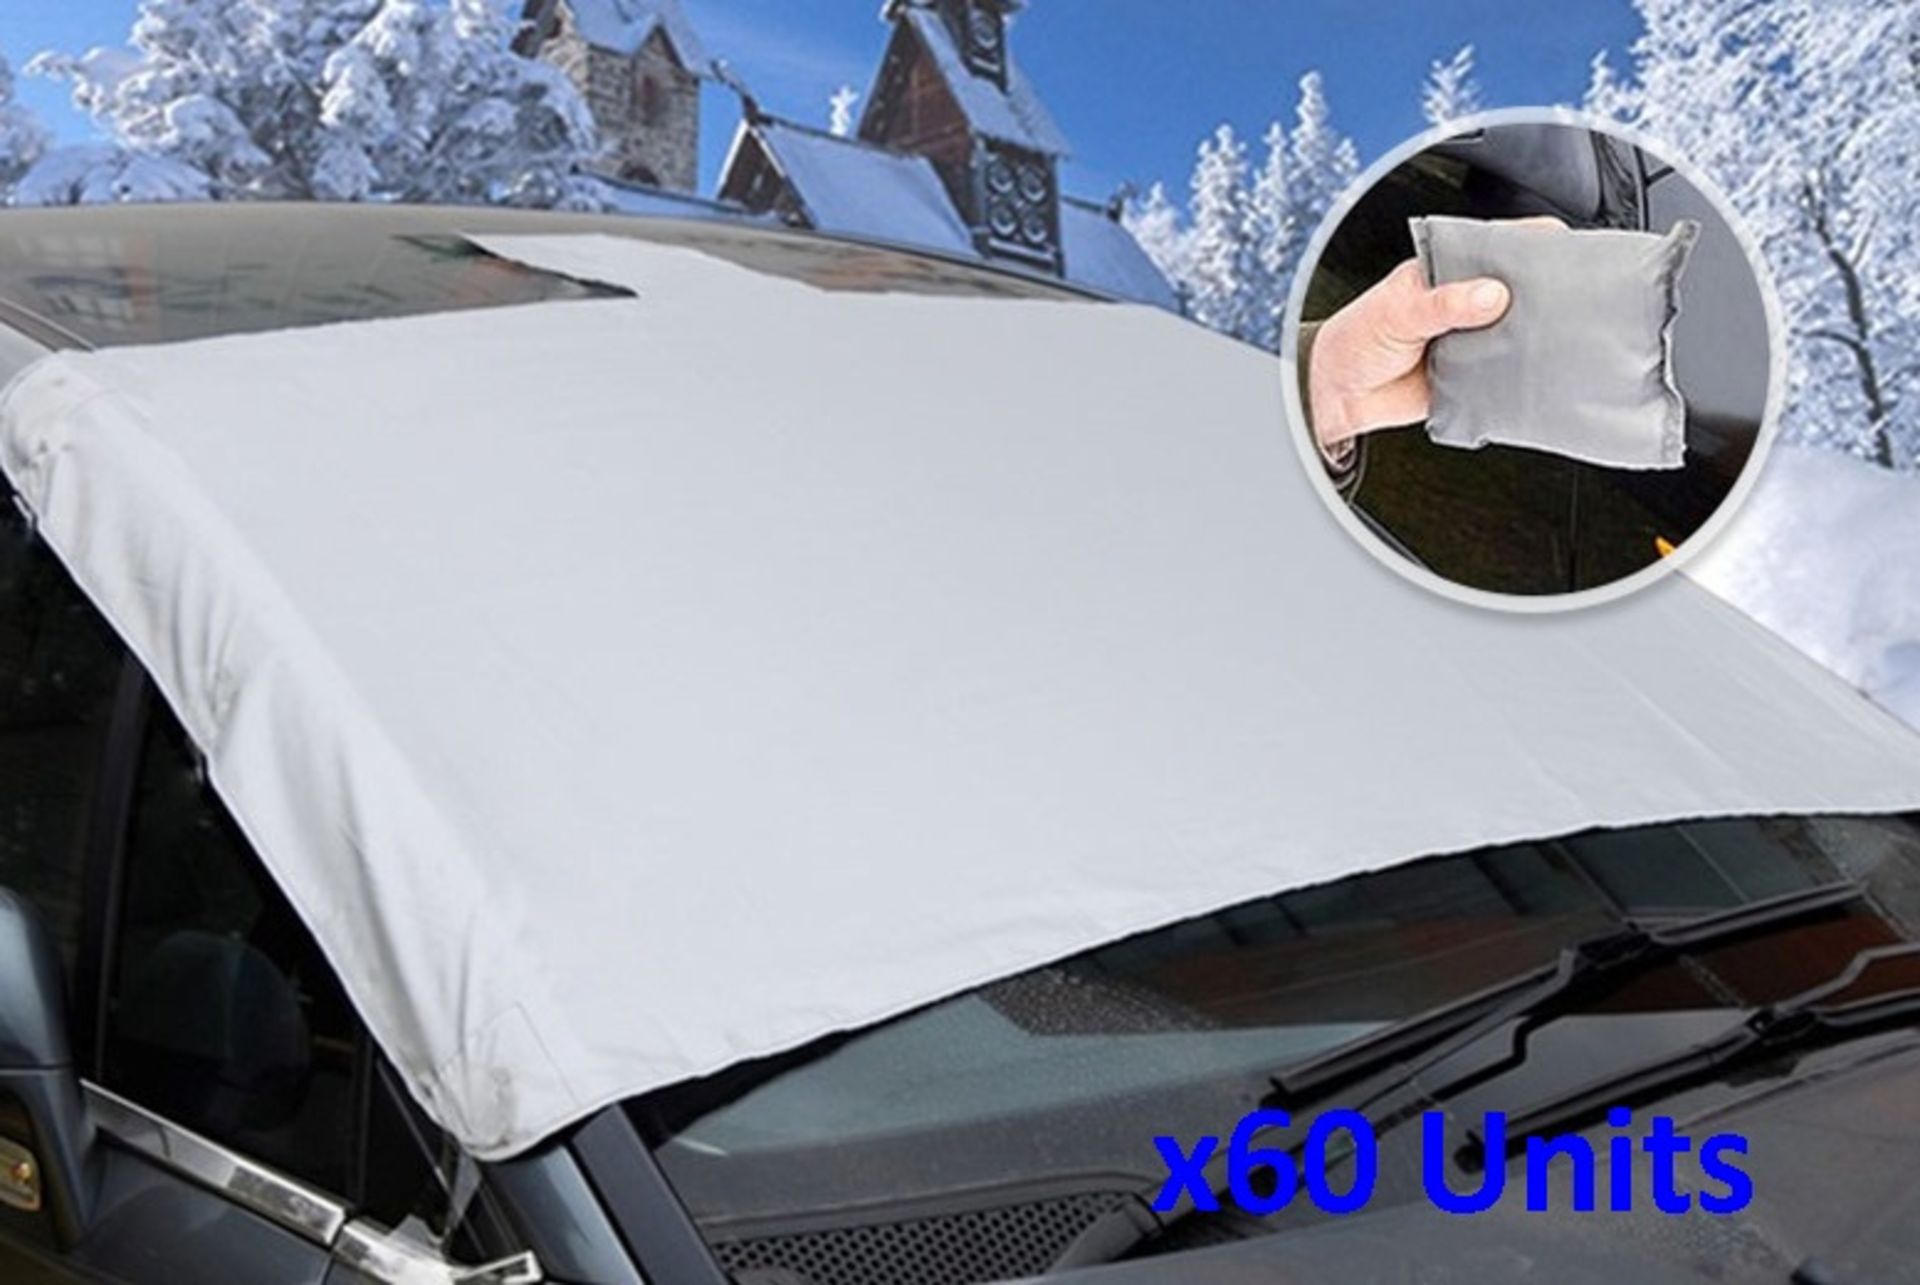 Magnetic Windscreen Covers Job Lot (x60 units)